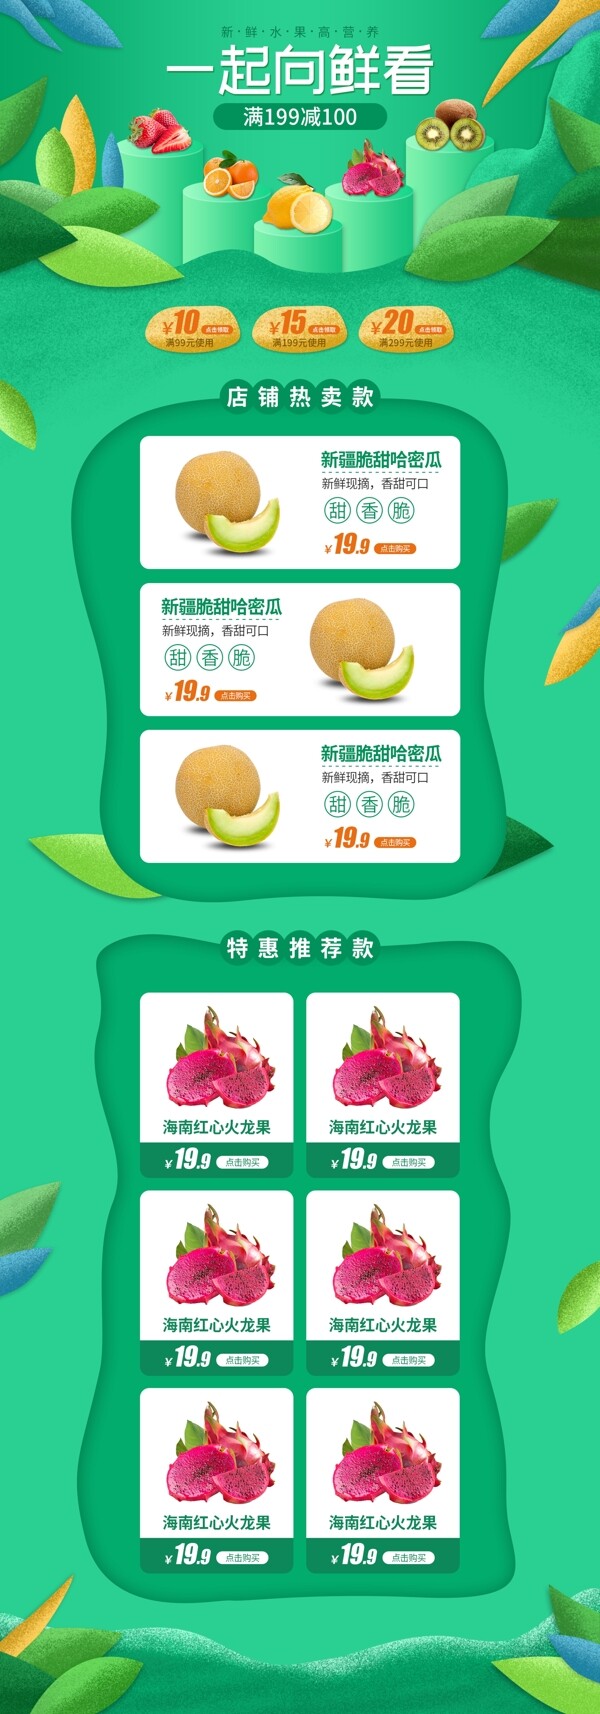 天猫淘宝水果蔬菜生鲜首页模板清新绿色促销